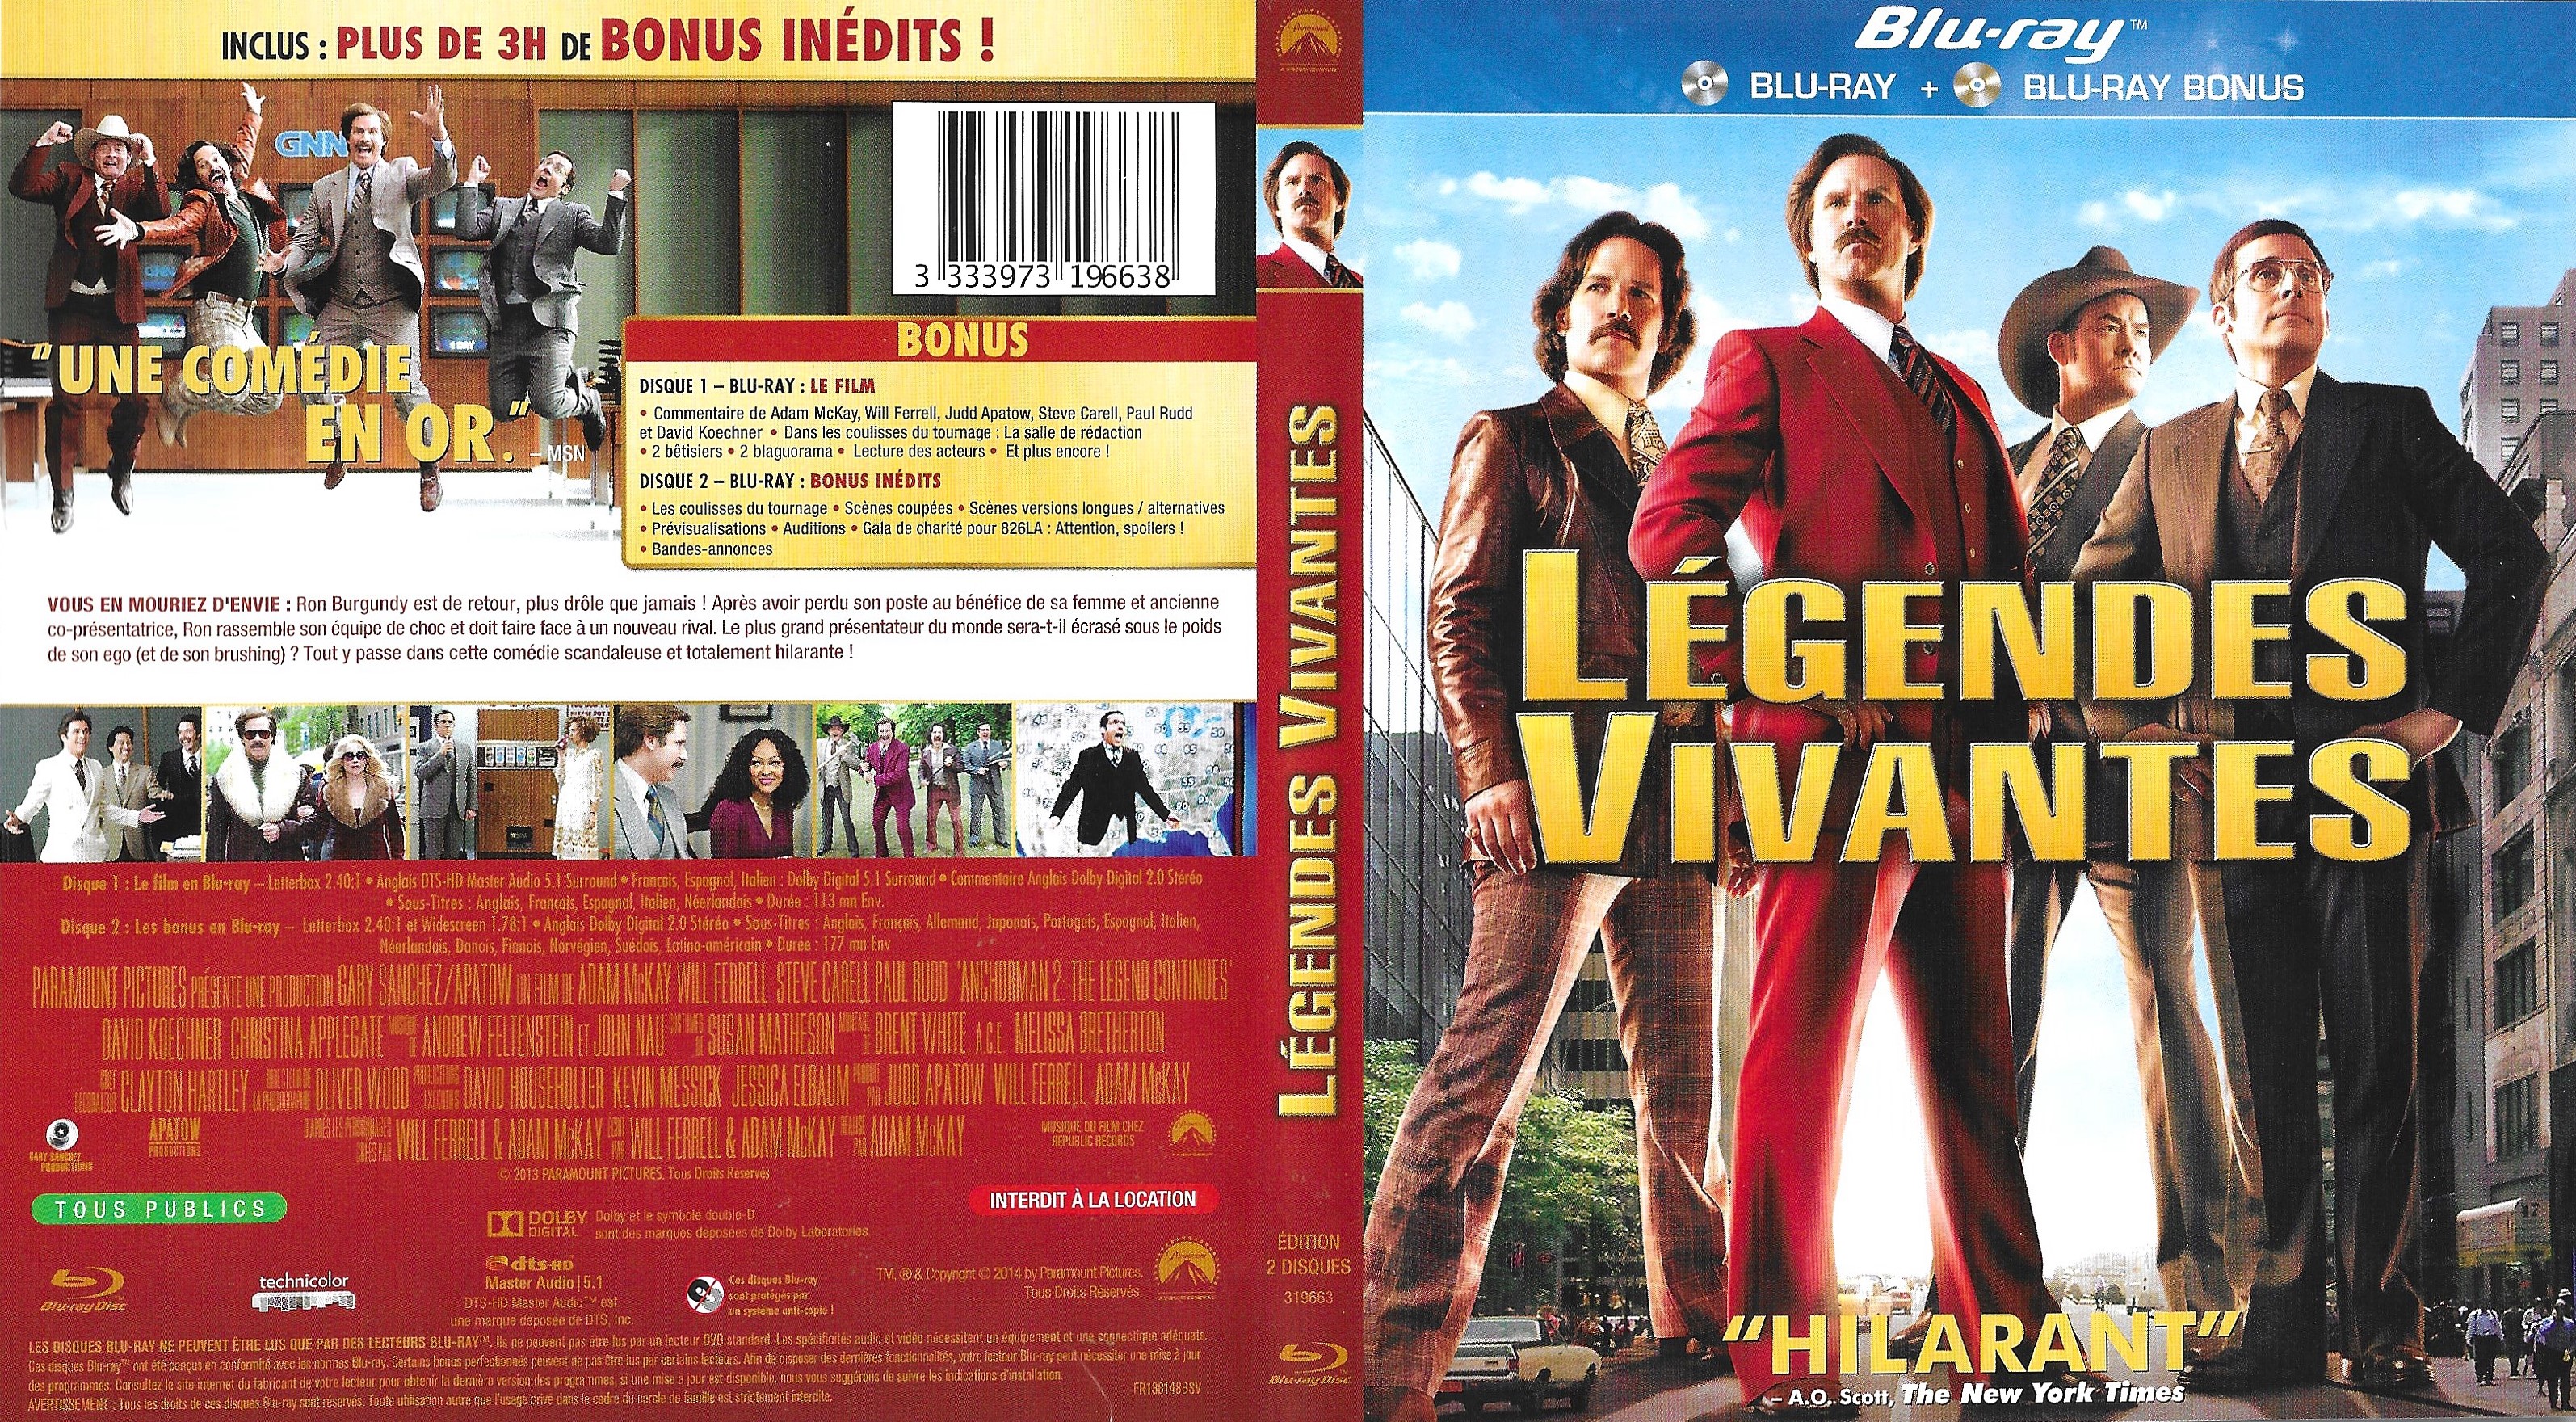 Jaquette DVD Legendes Vivantes - Anchorman 2 (BLU-RAY)